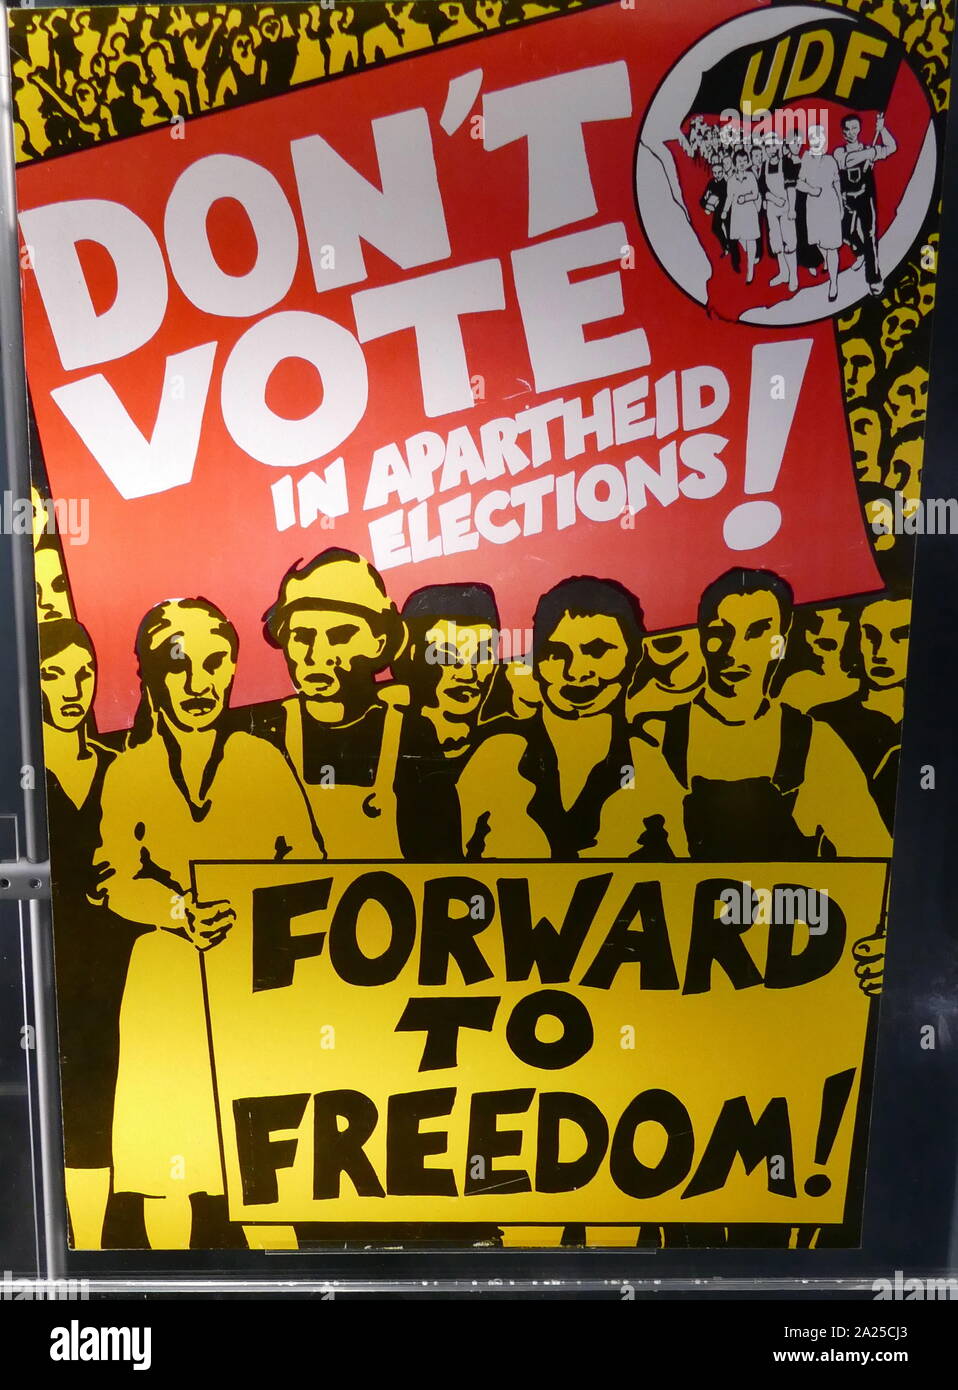 L'UDF affiche de propagande émis pendant l'administration de l'Apartheid en Afrique du Sud. vers 1984. L'United Democratic Front (UDF) a été l'un des principaux de l'organisation anti-apartheid des années 80. Banque D'Images